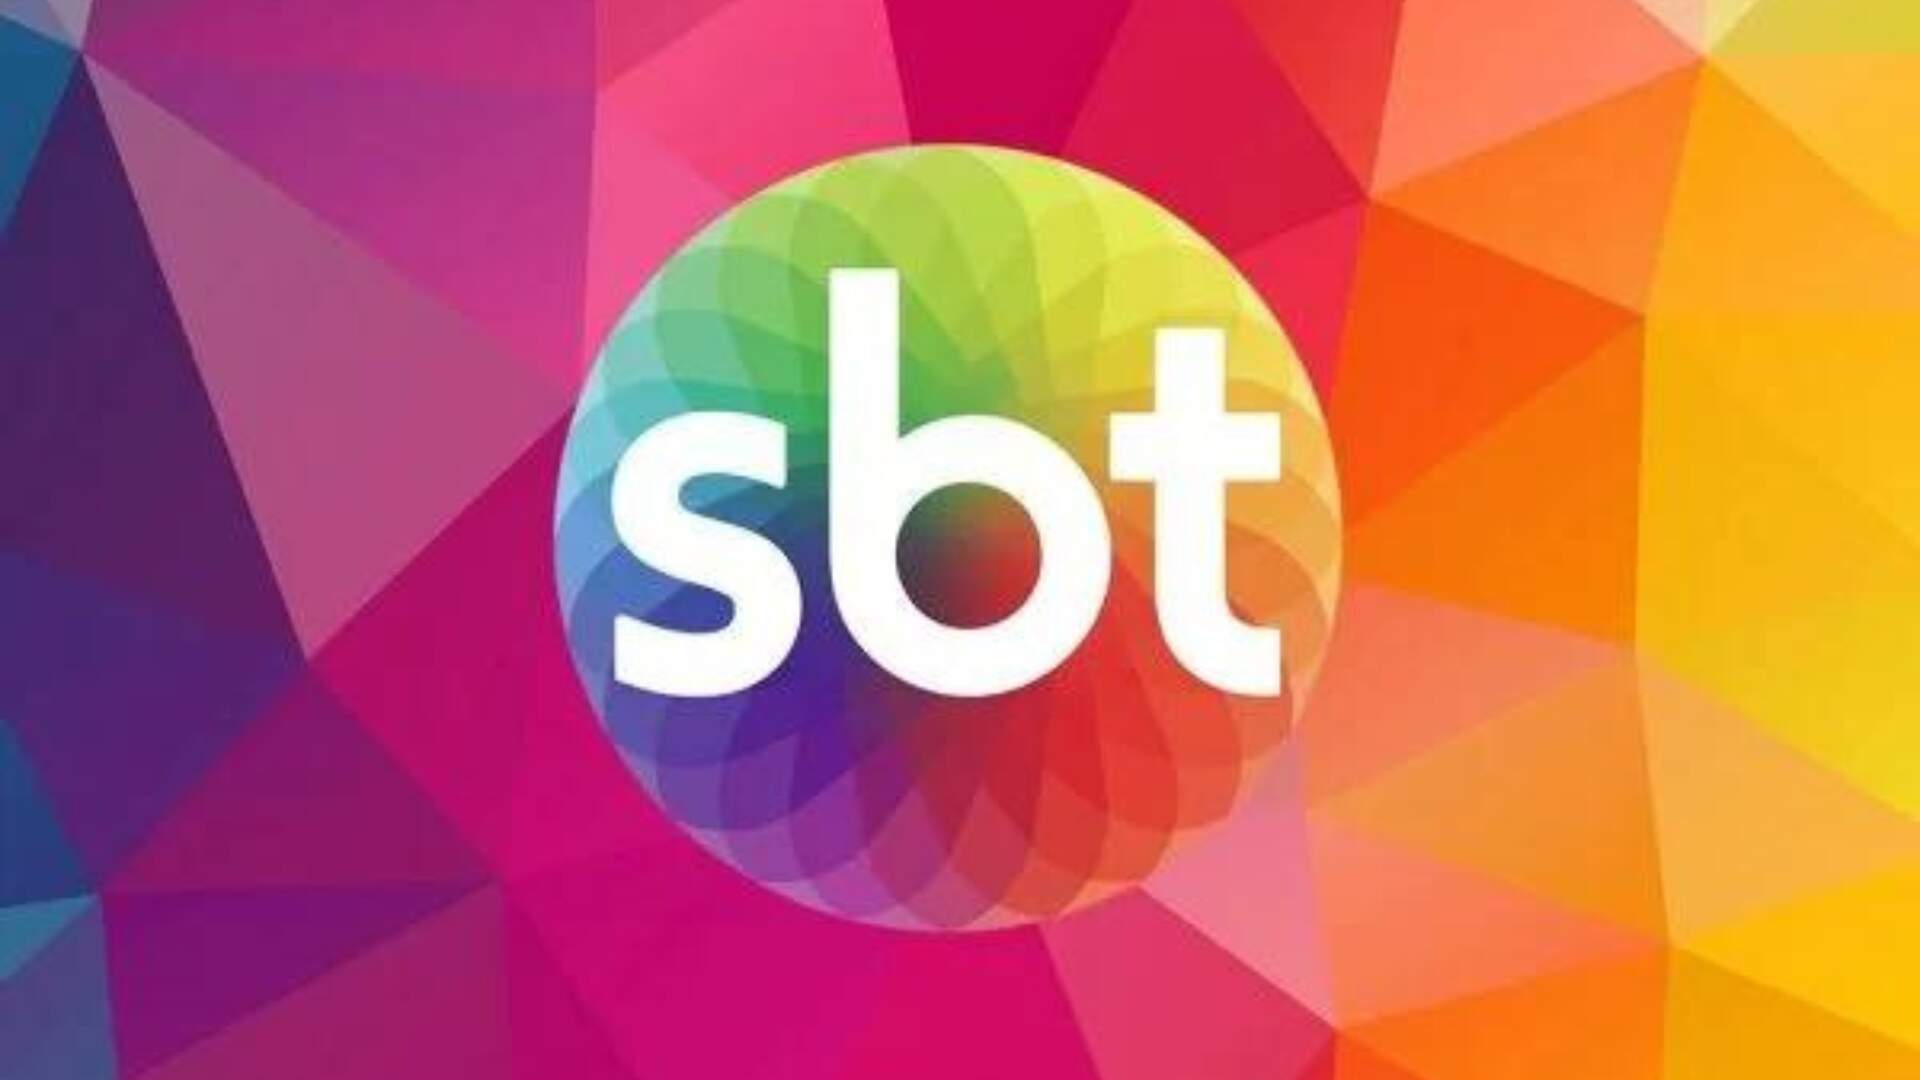 Faliu? Equipe de Silvio Santos cancela programa aclamado pelo público e SBT toma decisão radical - Metropolitana FM